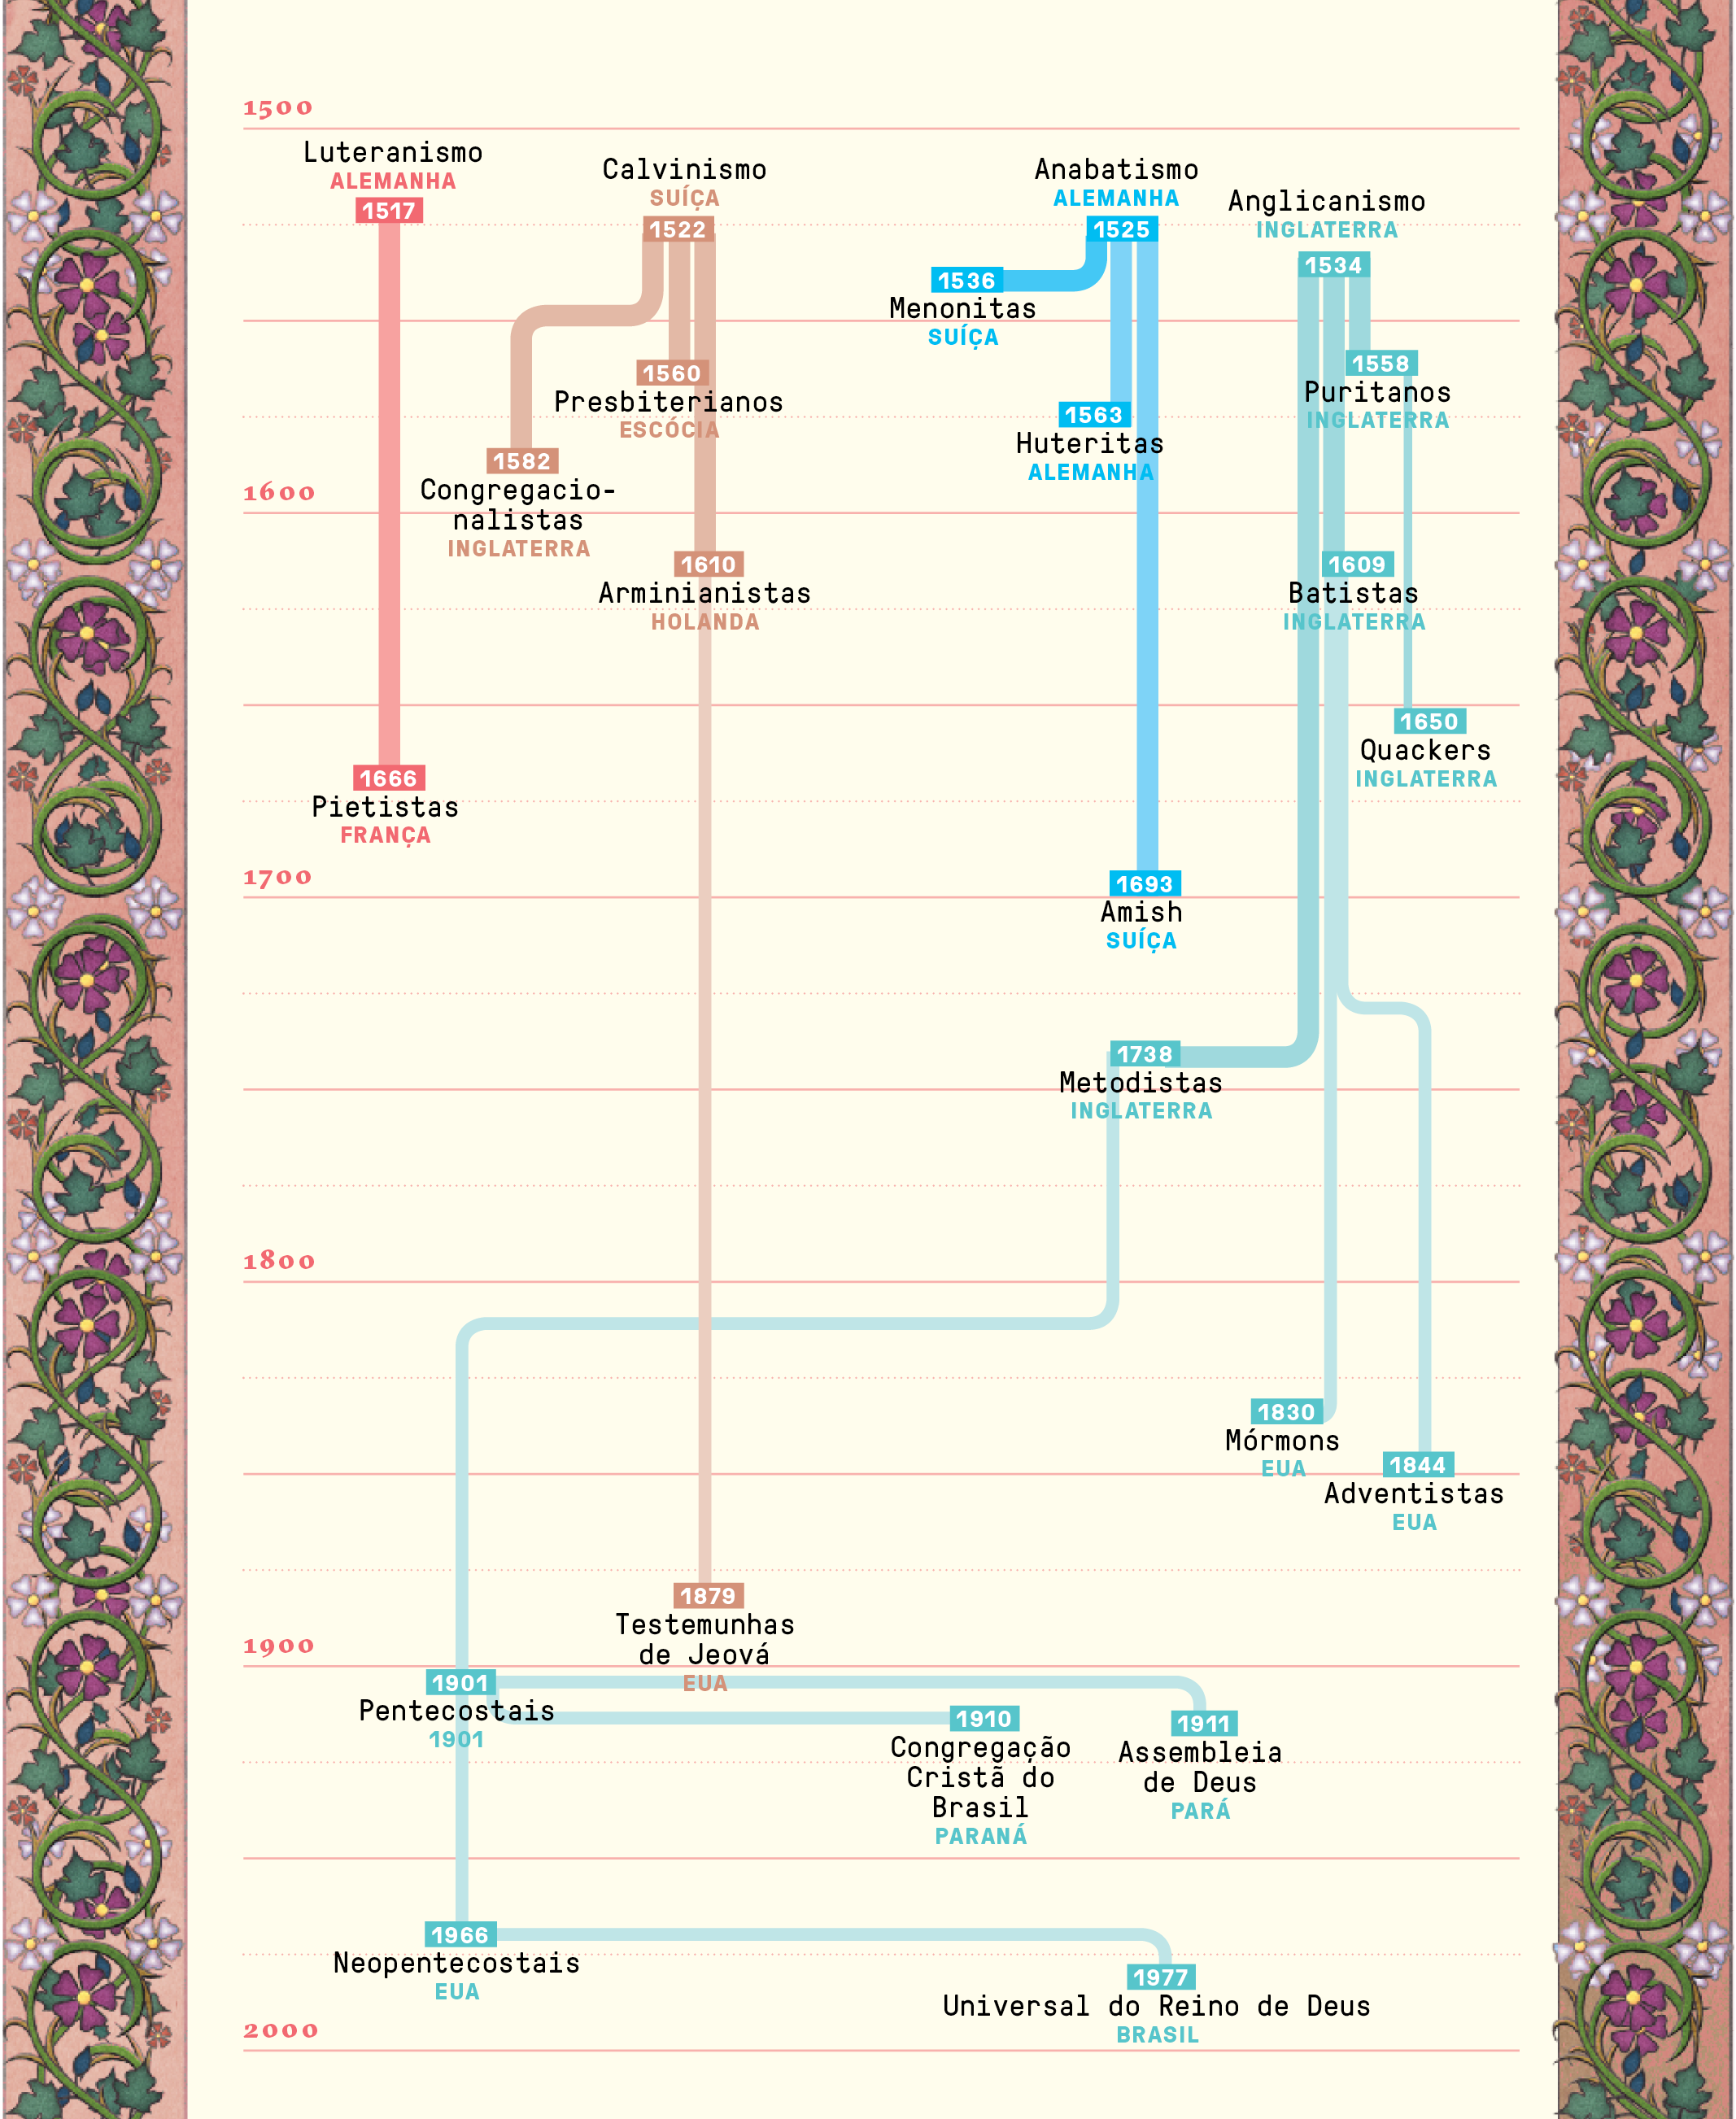 Gráfico de linha do tempo da evolução do protestantismo e suas ramificações. Do Luteranismo na Alemanha em 1517 à Universal do Reino de Deus no Brasil em 1977.